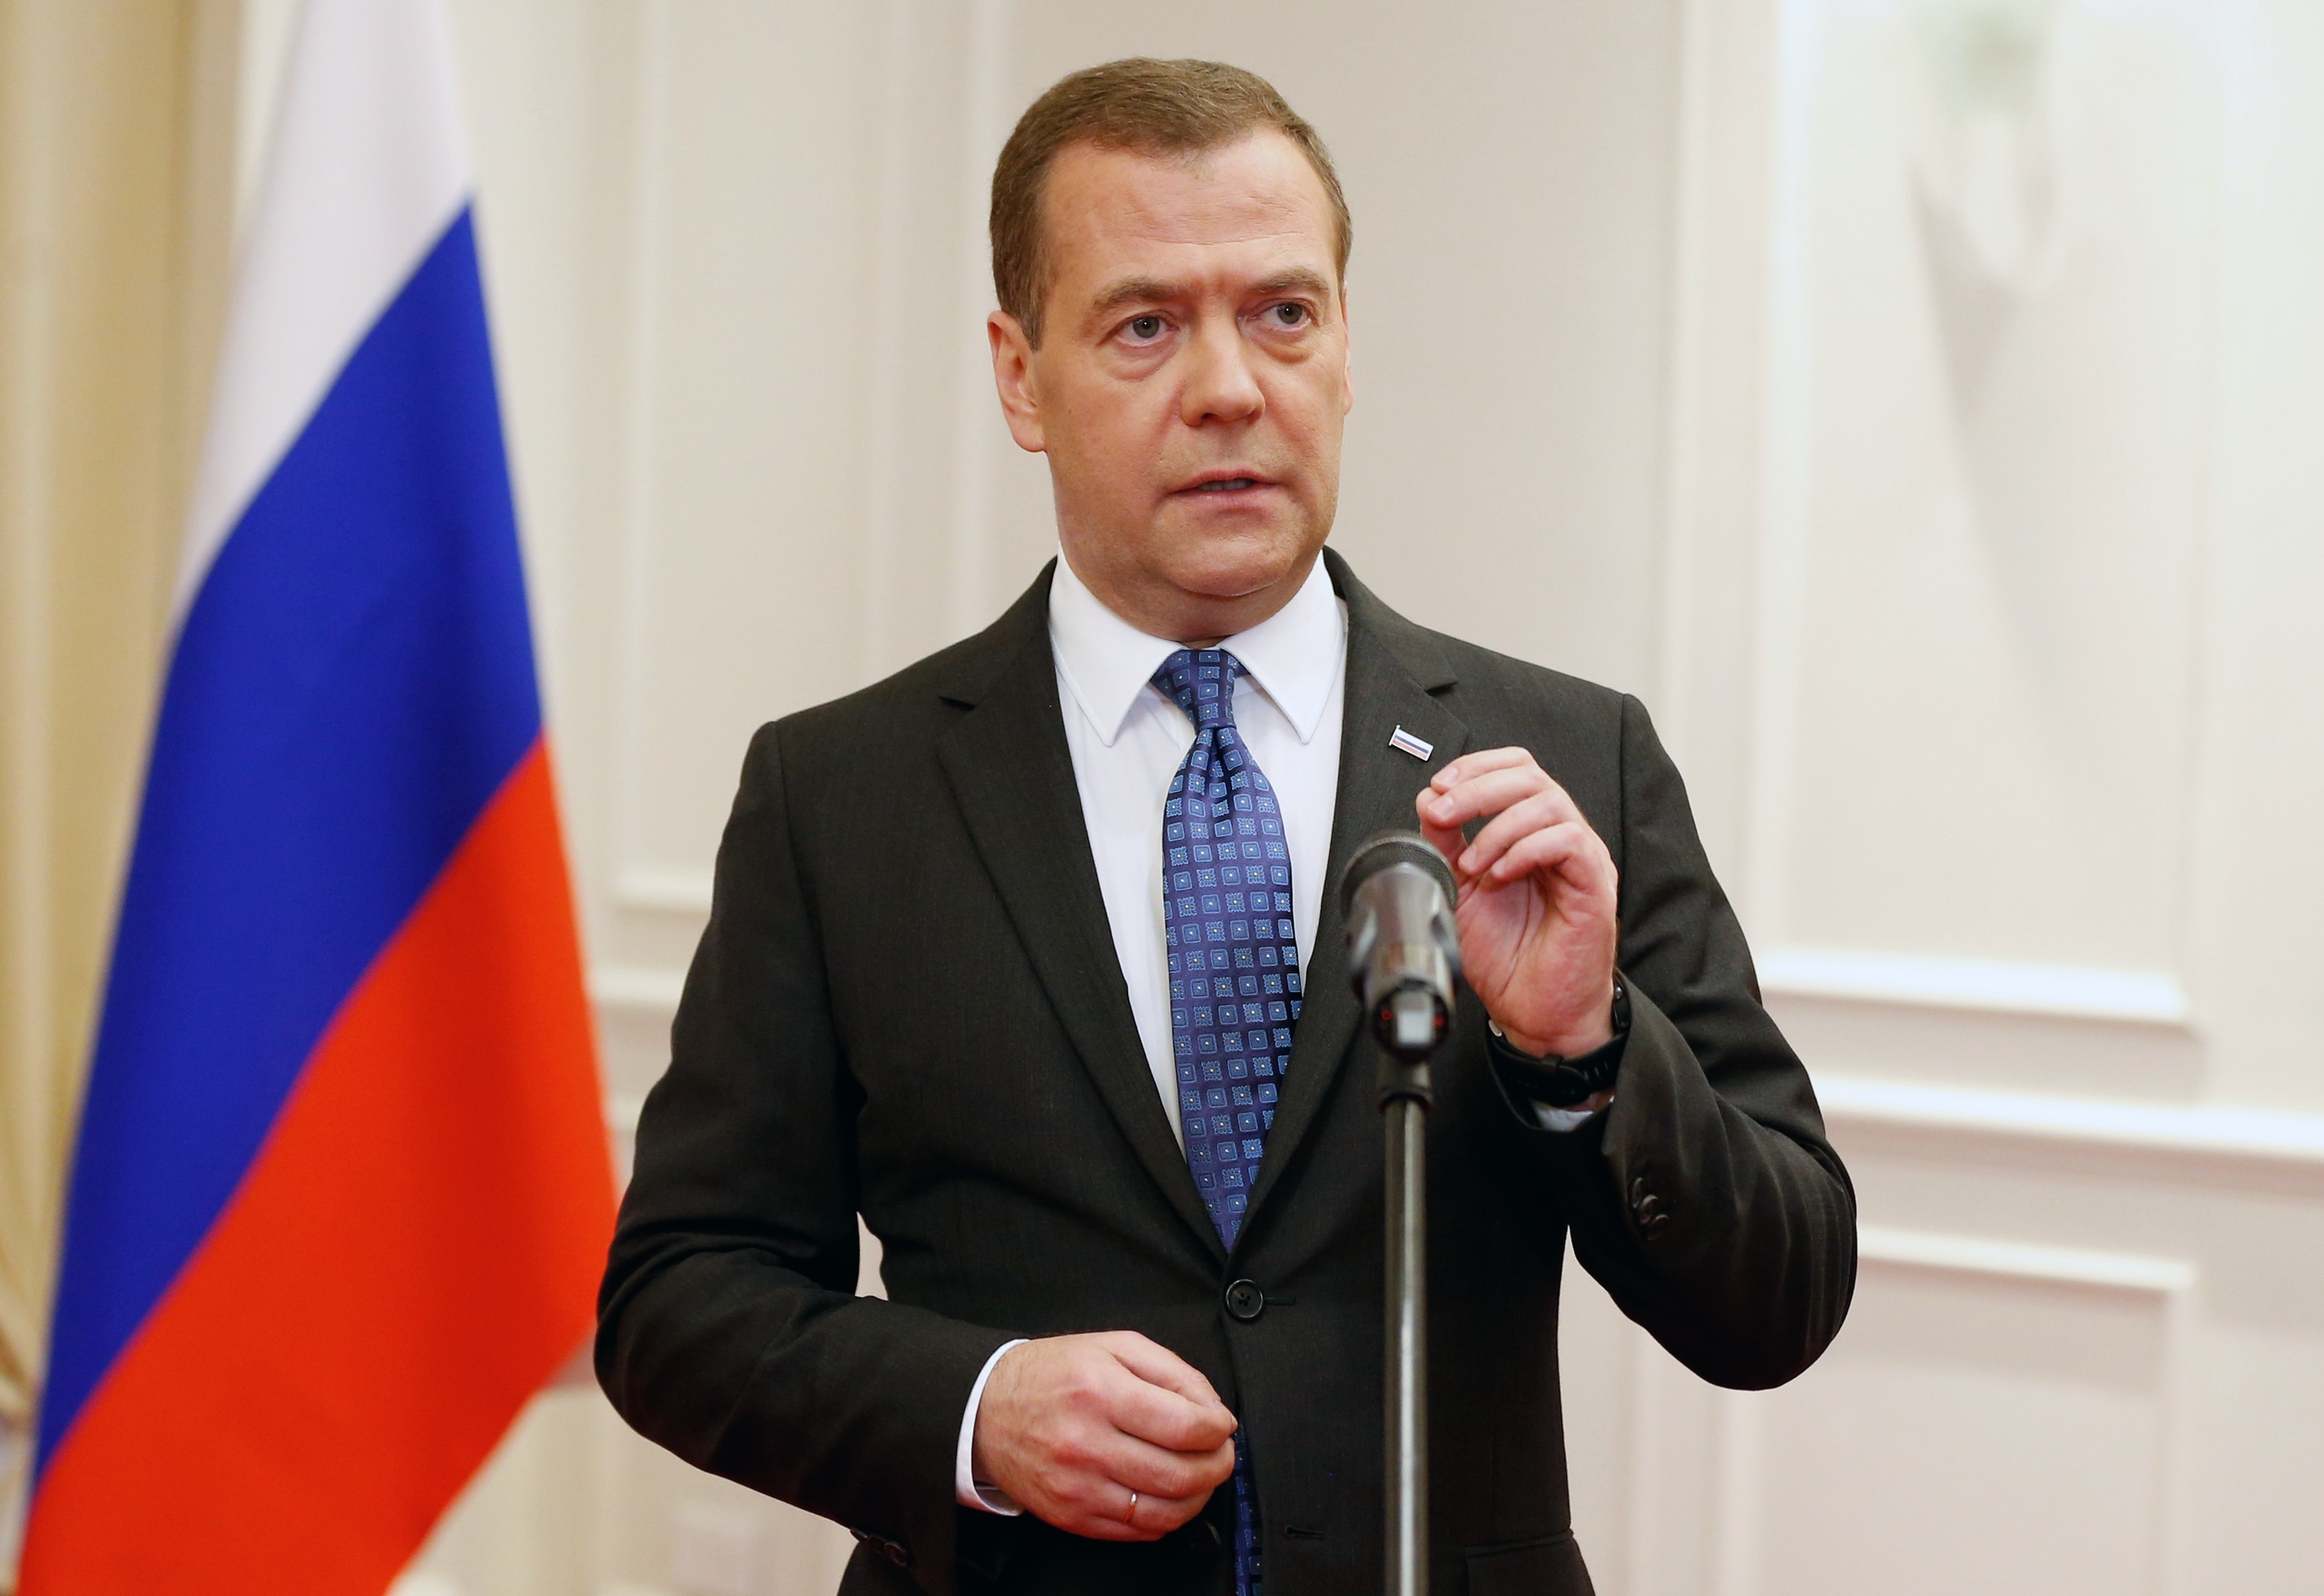 Медведев во френче. Медведев на фоне флага России. Медведев д а в военной форме.